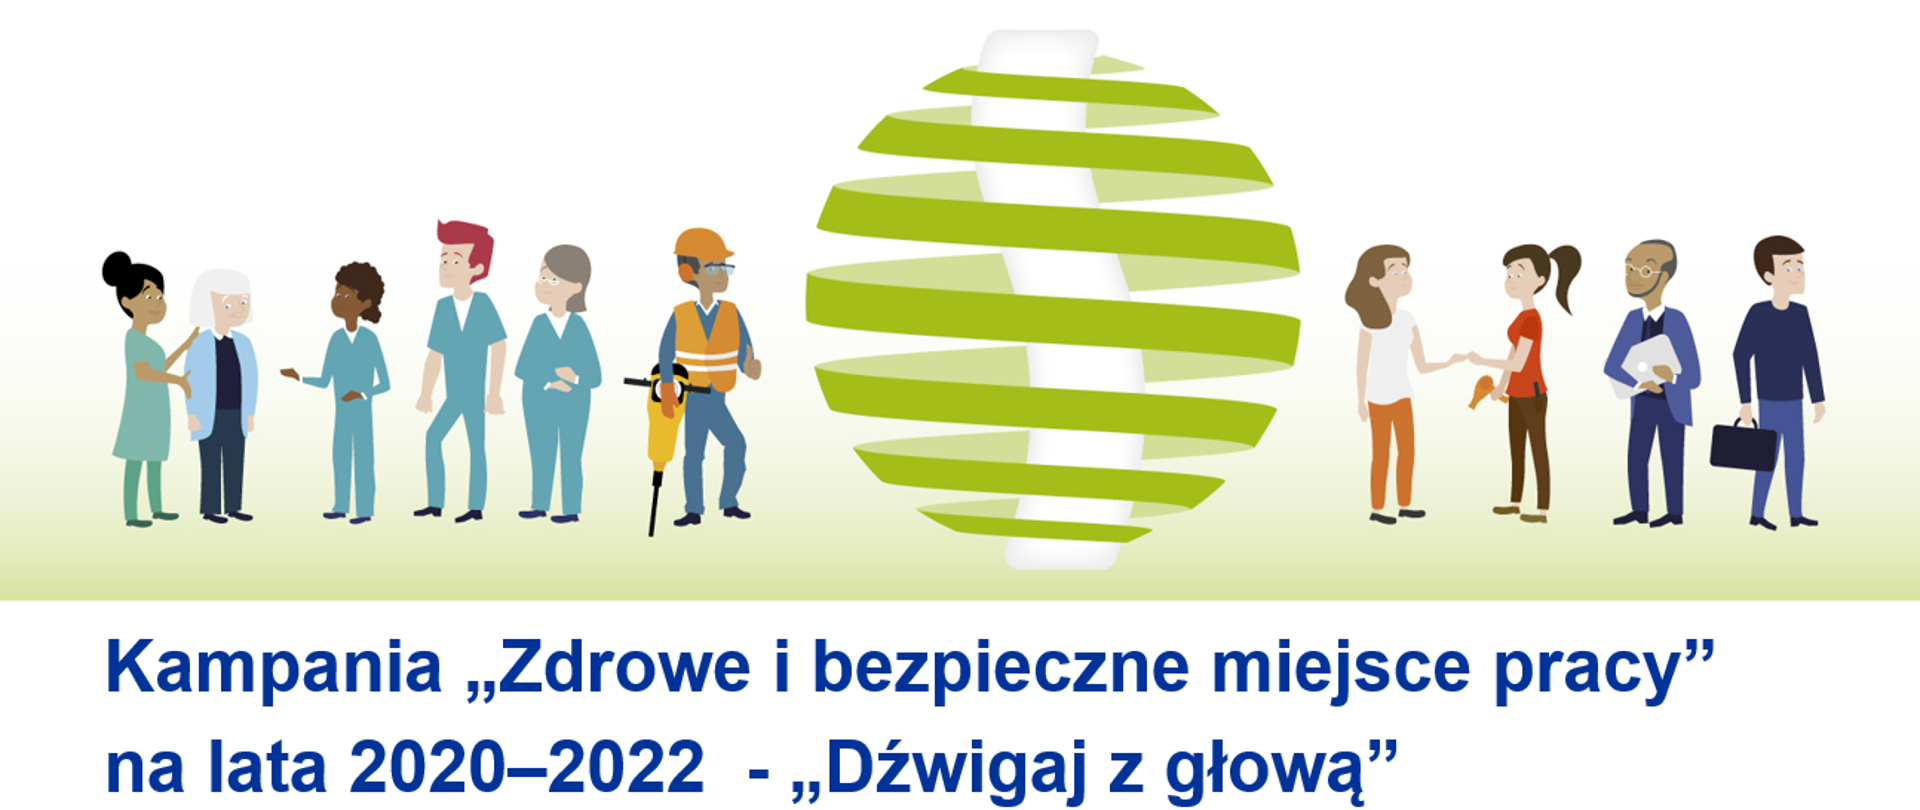 Kampania "Zdrowie i bezpieczne miejsce pracy" na lata 2020-2022 - "Dźwigaj z głową"